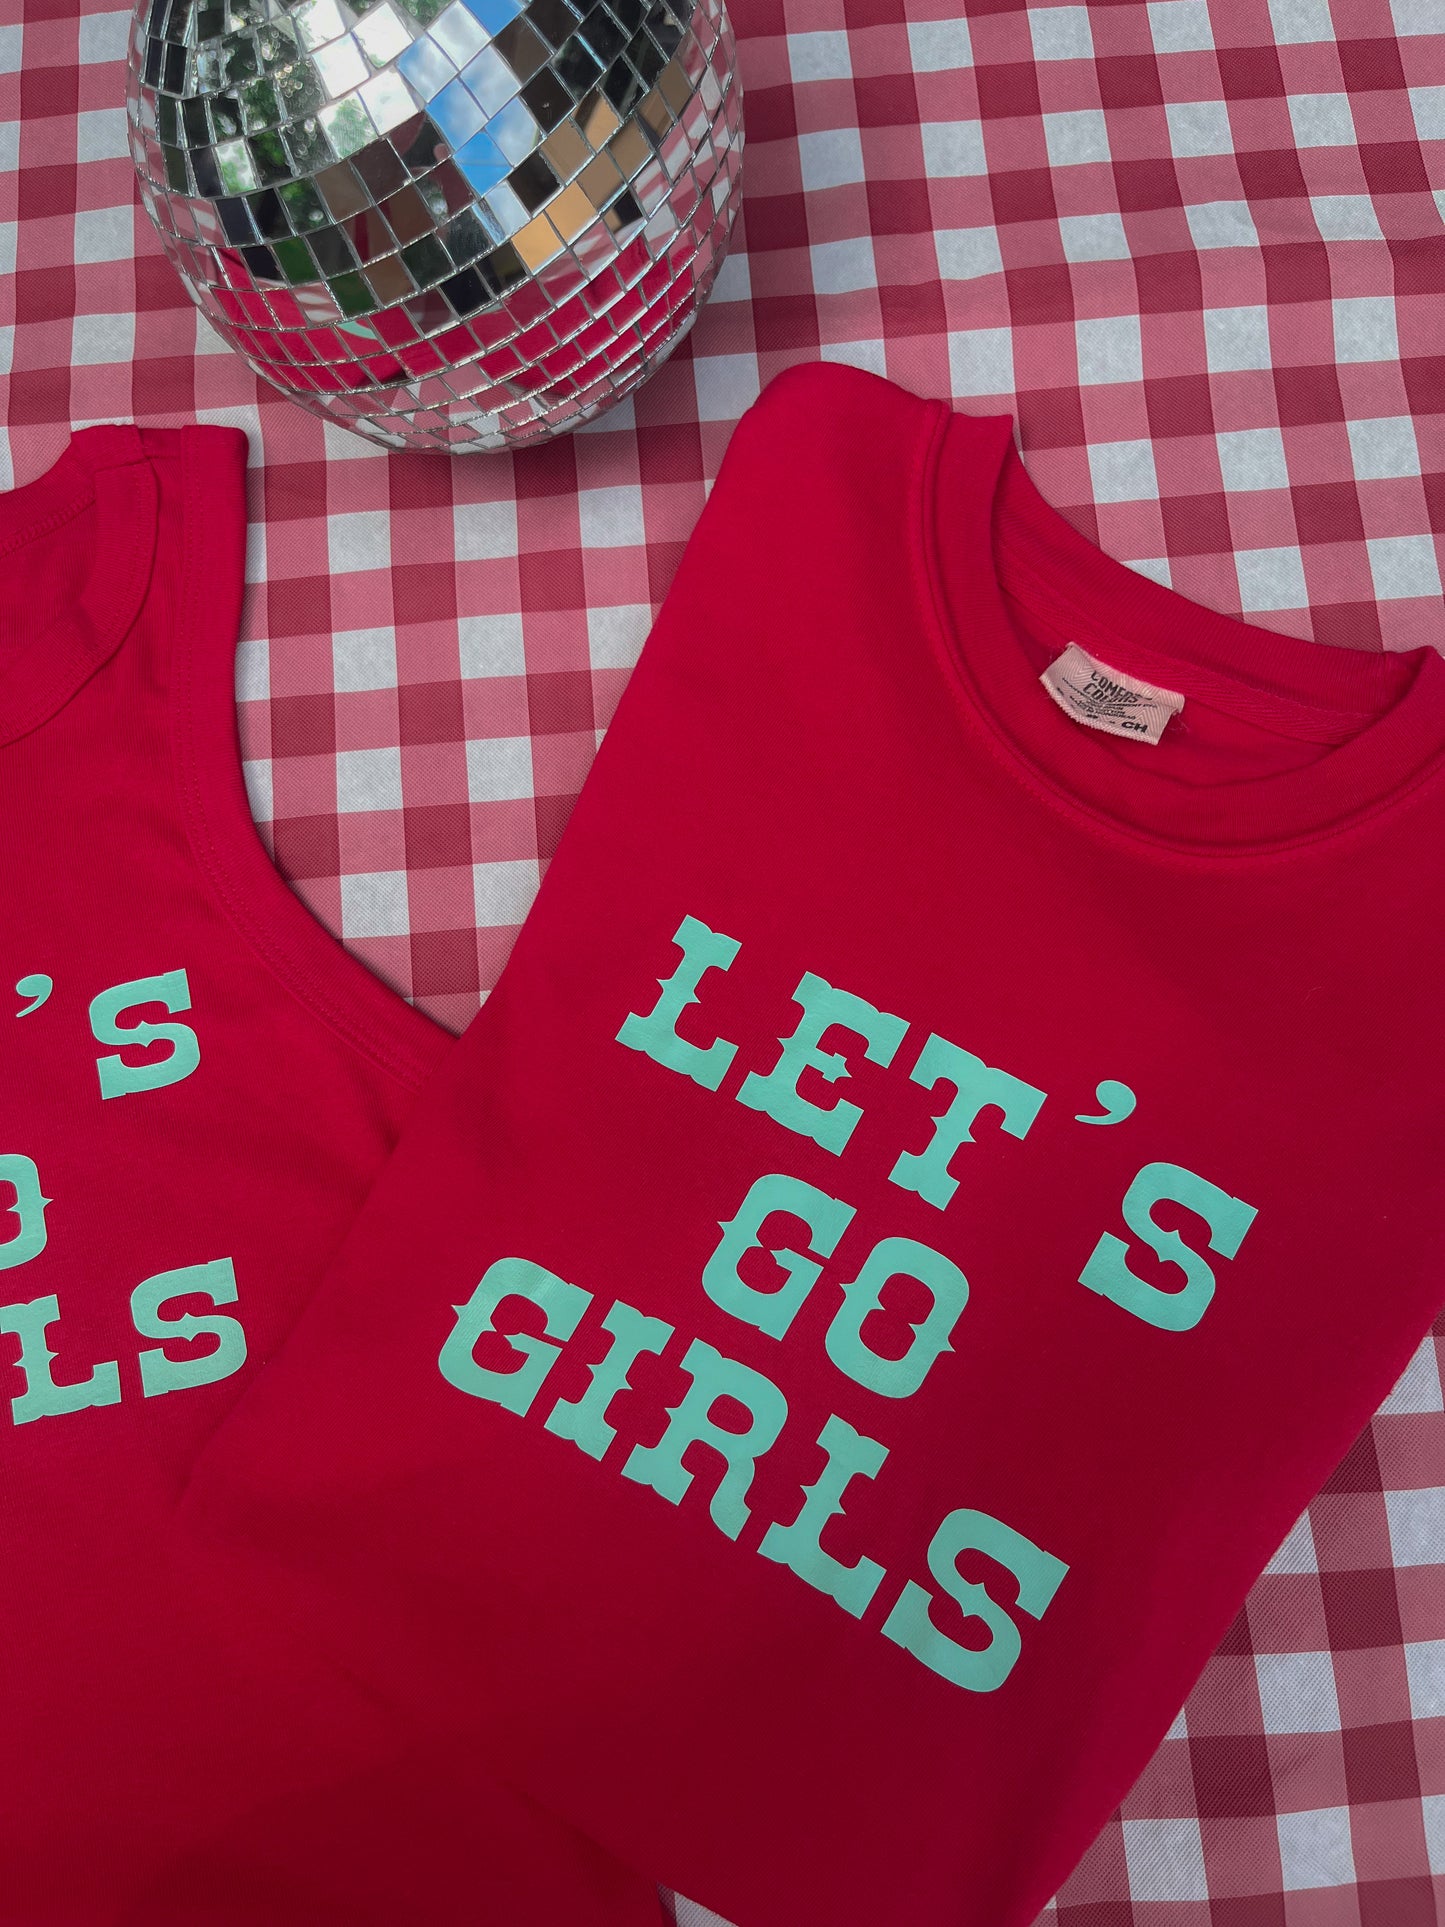 Let’s Go Girls KC Women’s Soccer Tee